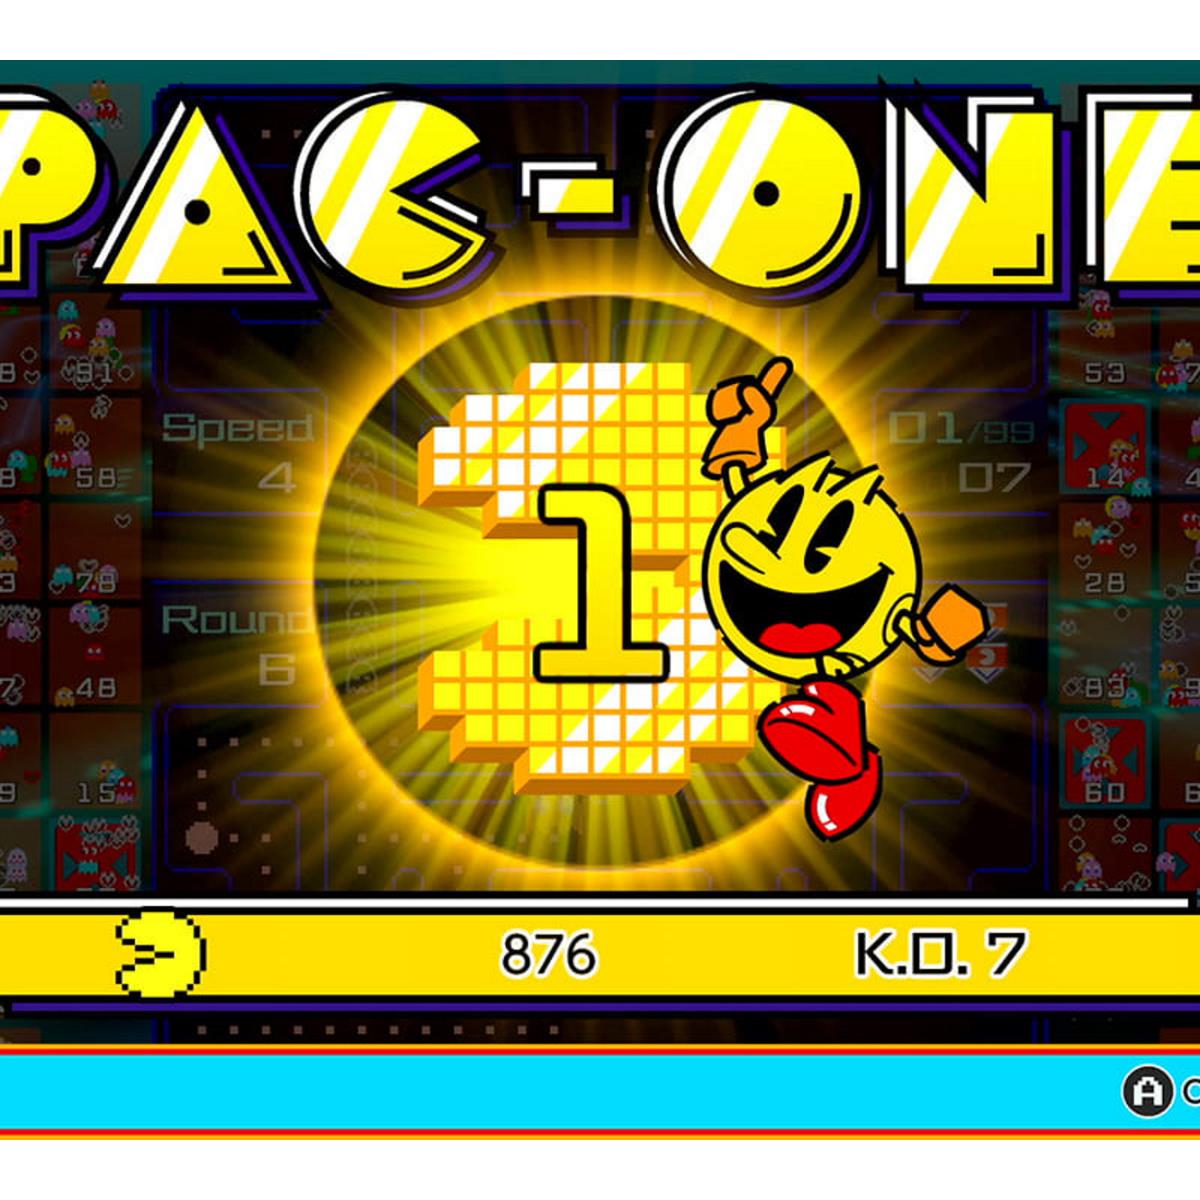 Pac-Man ganha versão battle royale para Nintendo Switch - GKPB - Geek  Publicitário